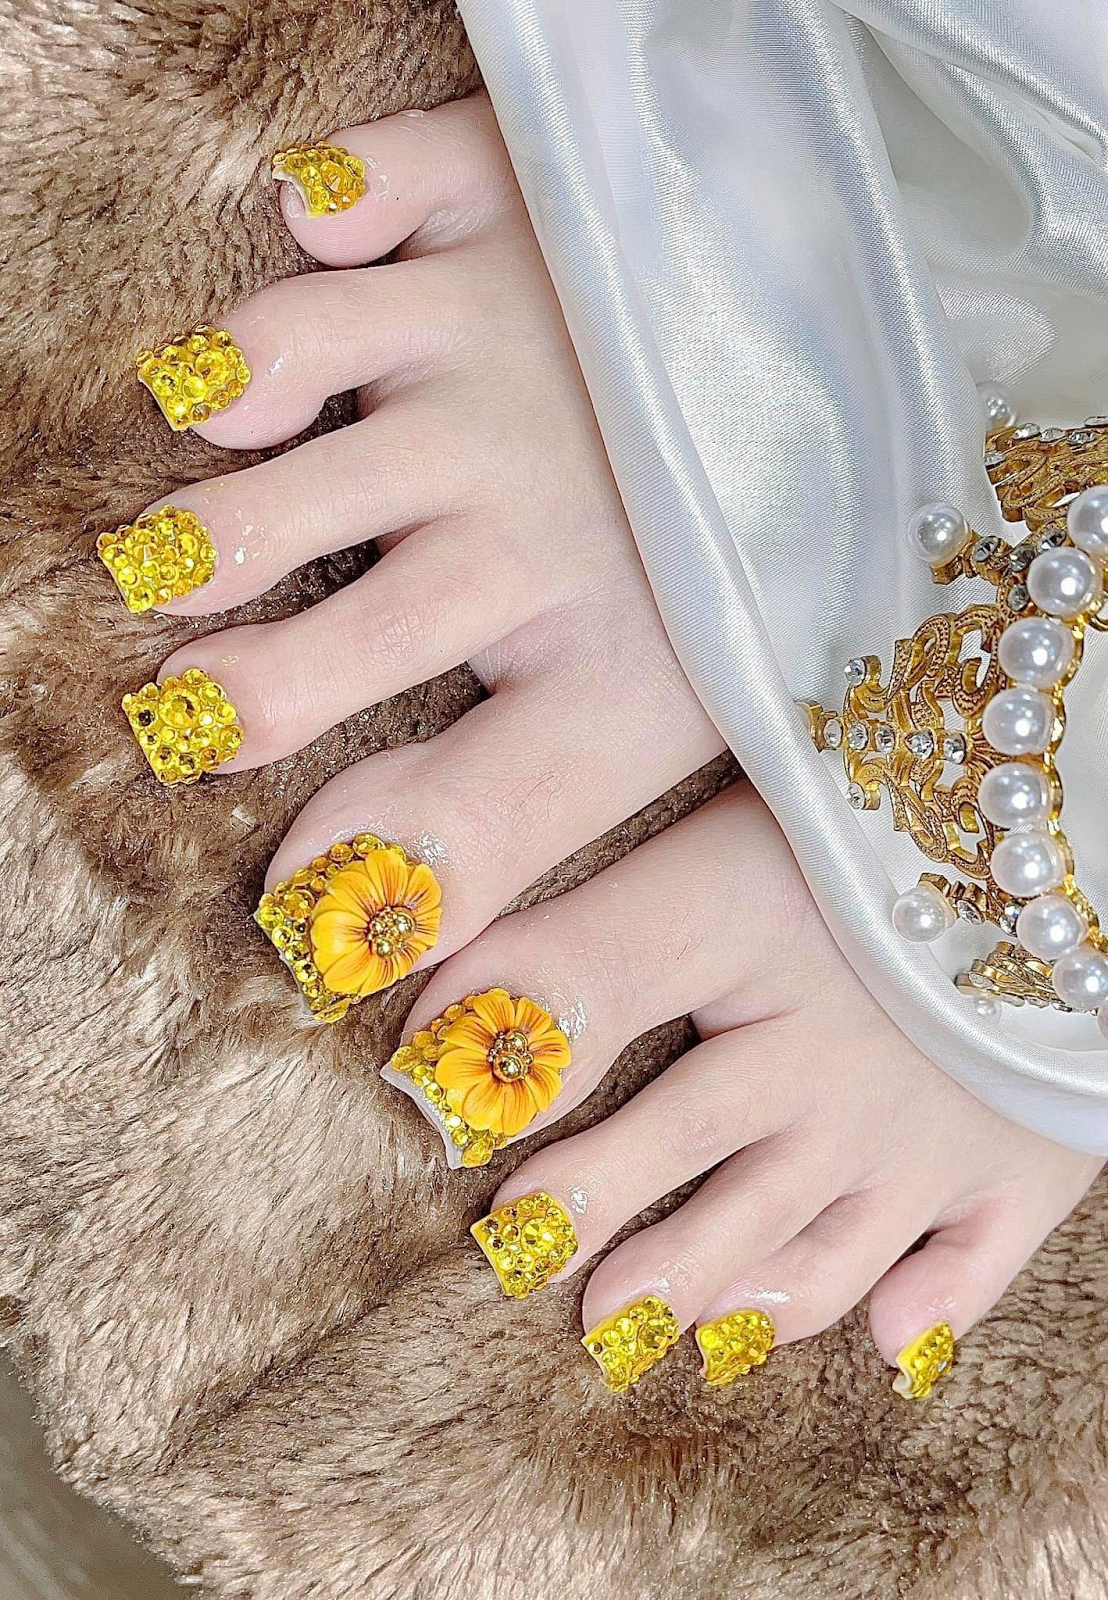 Nail chân gold color đính kèm đá xa hoa 